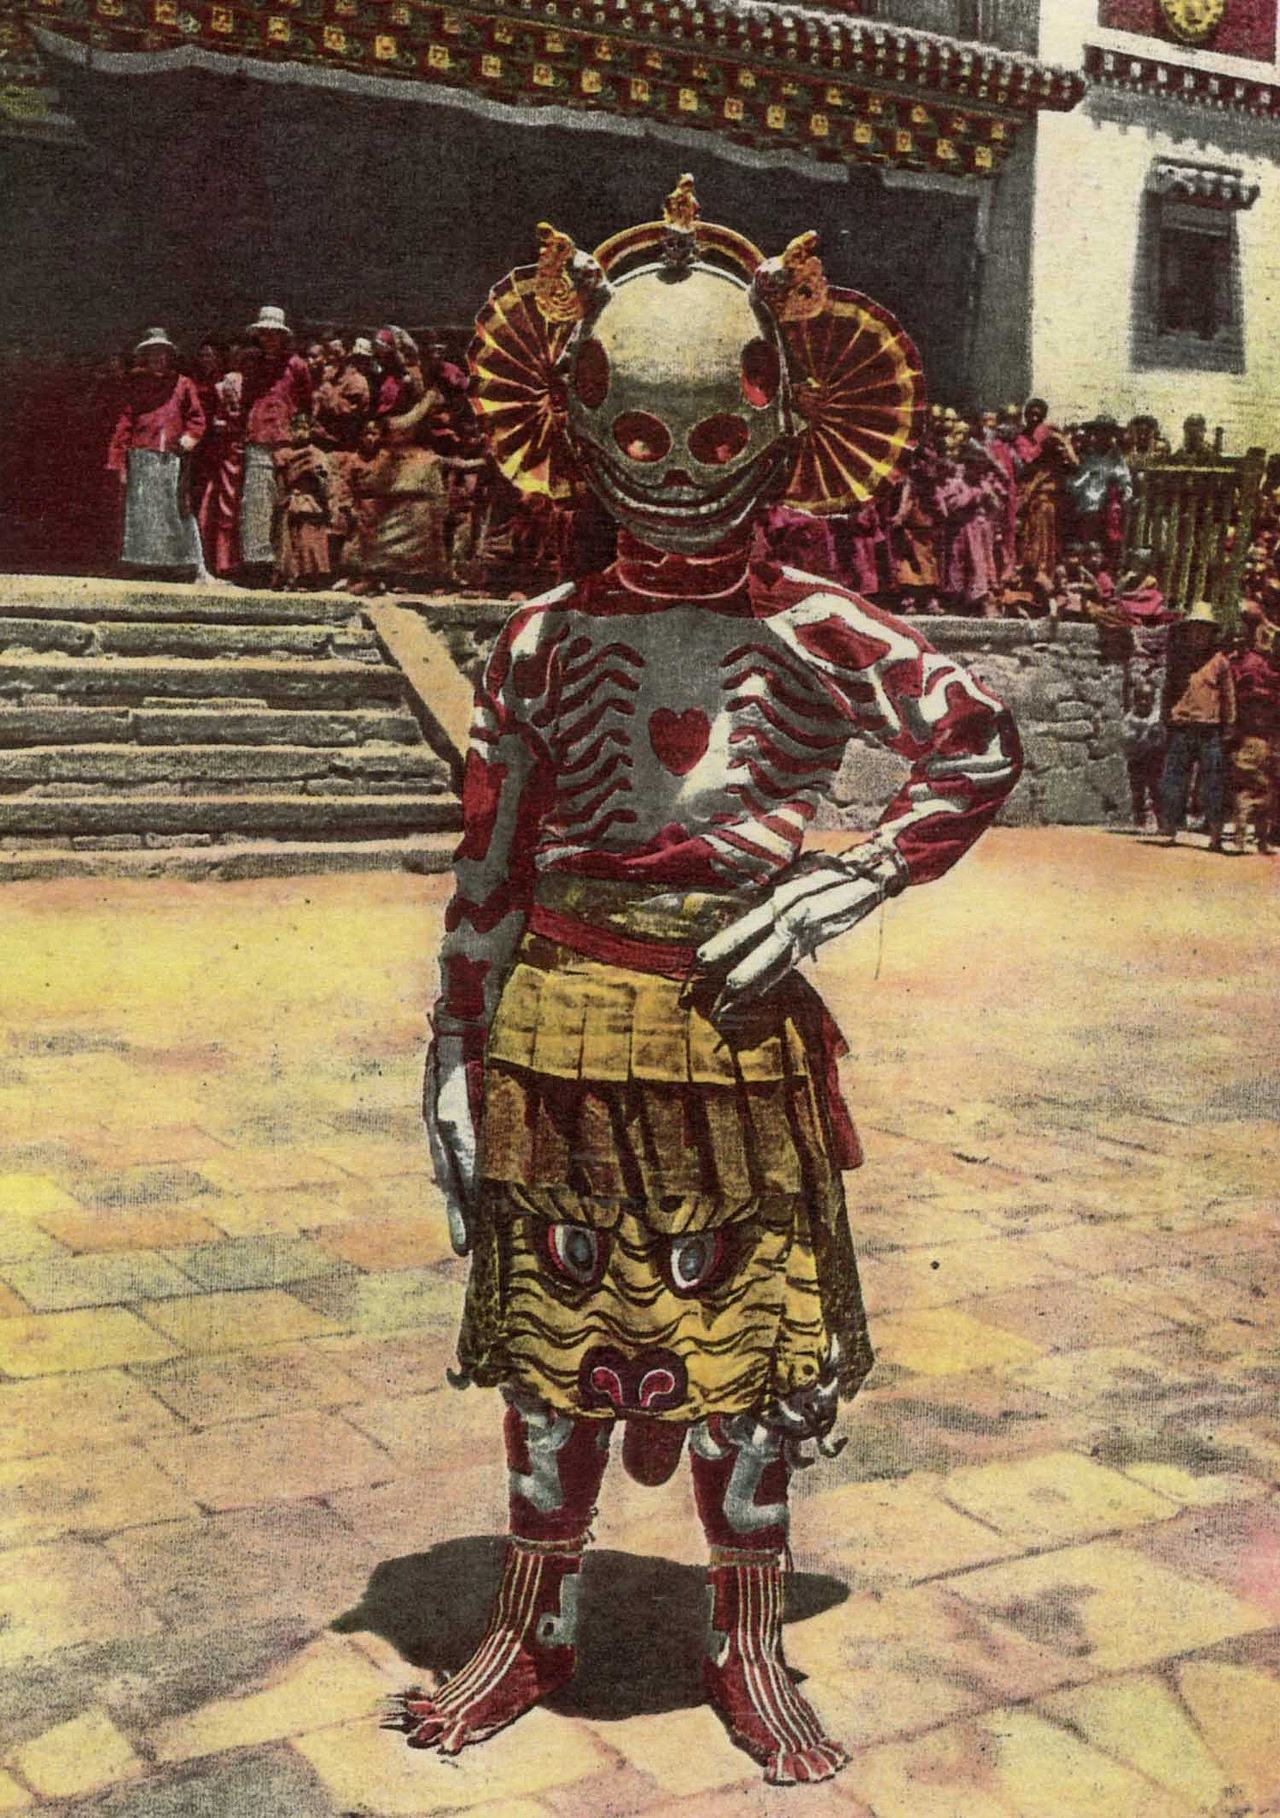 tibetan skeleton dancer - On